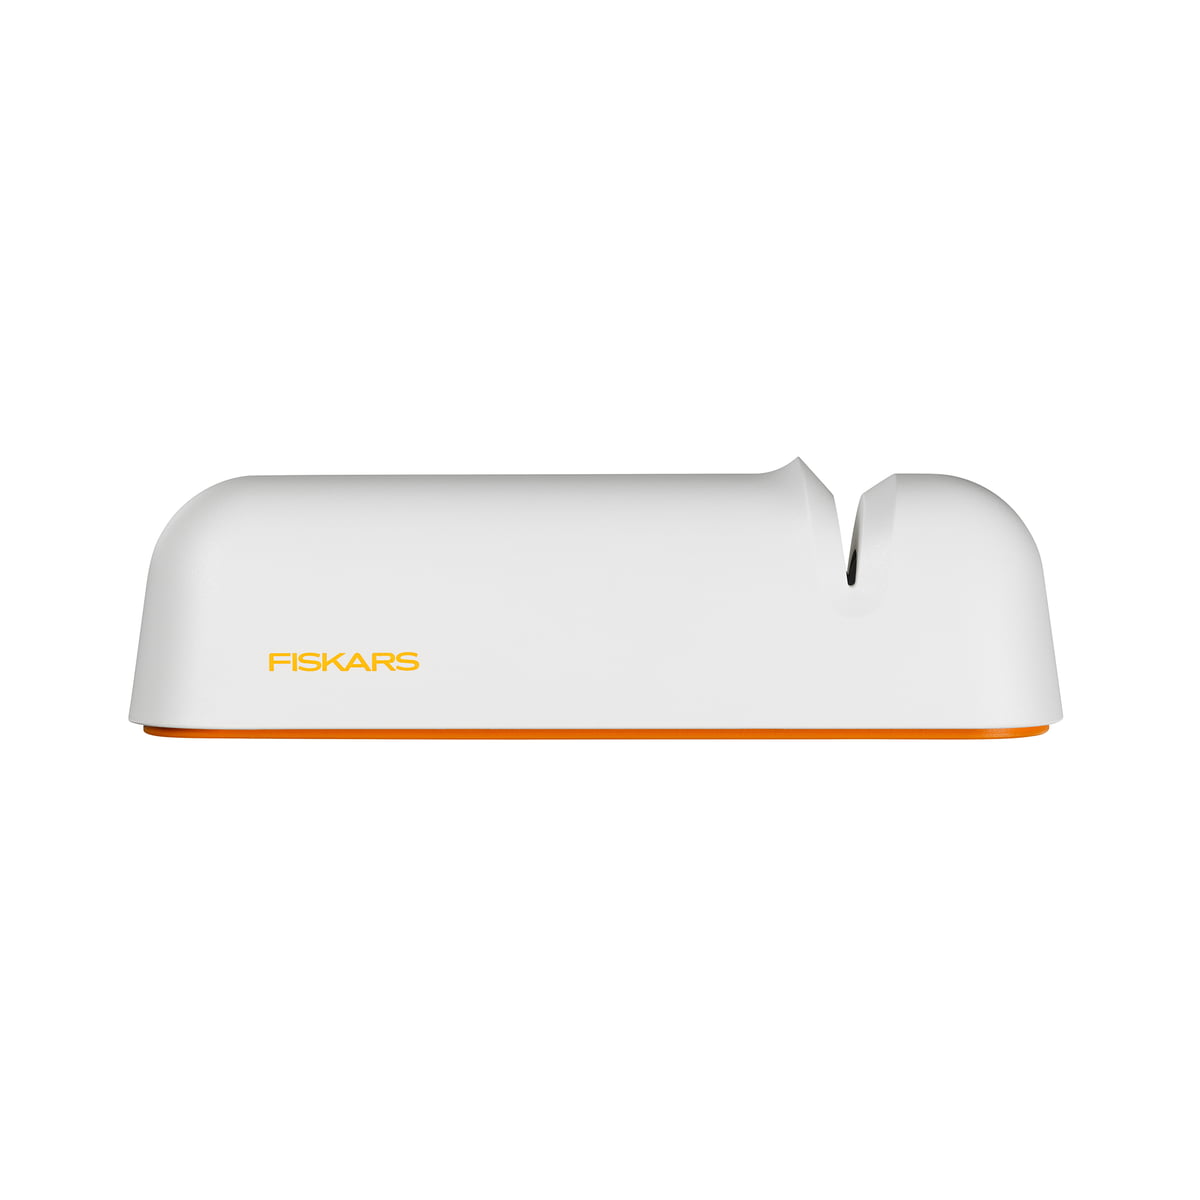 https://cdn.connox.com/m/100030/542907/media/Fiskars/Functional-Form/Fiskars-Functional-Form-Messerschleifer-weiss-orange-seitlich.jpg